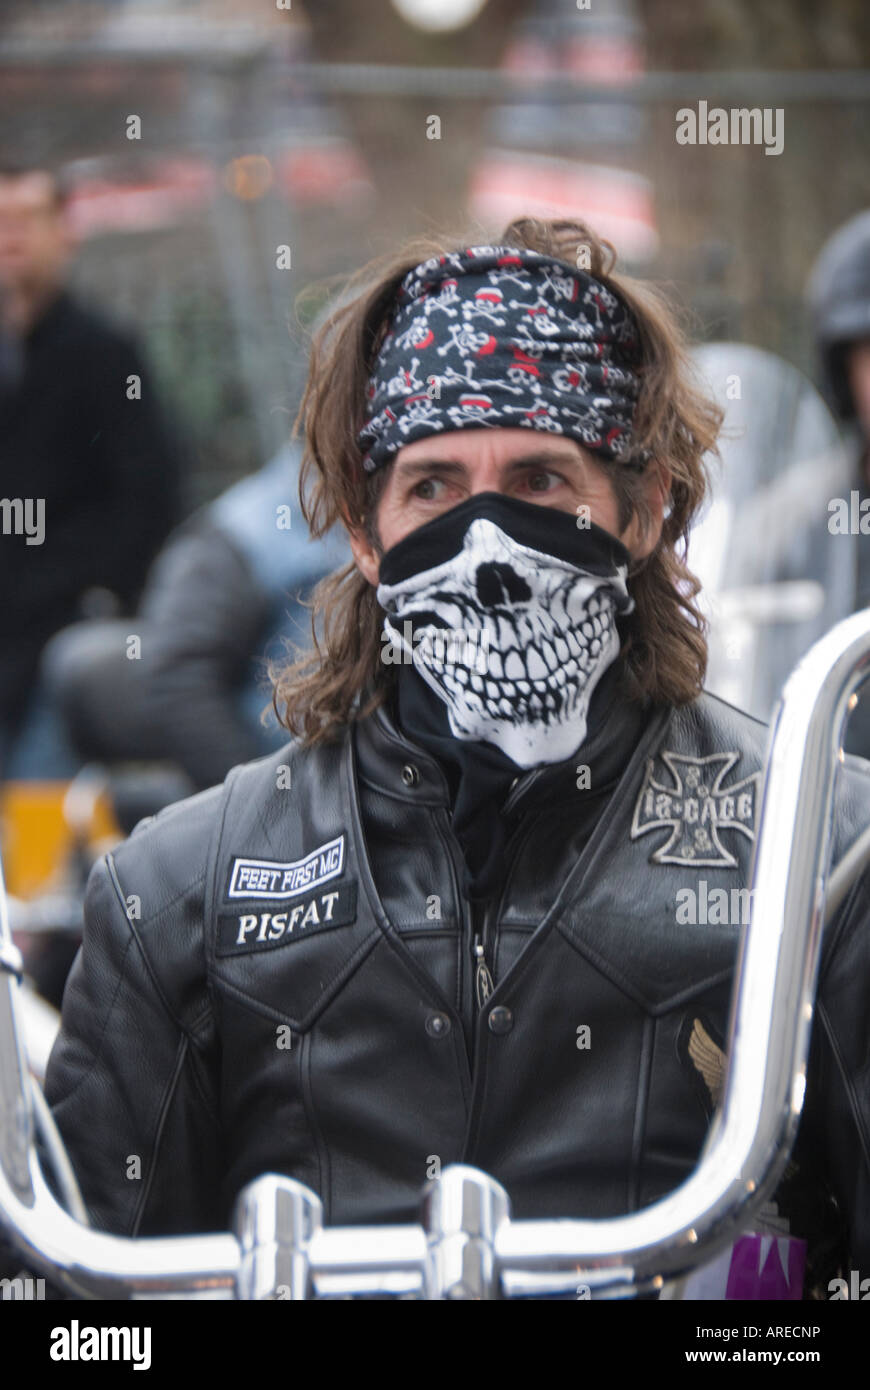 L'homme sur la moto, Head & Shoulders, le port de foulard tête de mort,  crâne masque, veste en cuir noire, pas de casque Photo Stock - Alamy